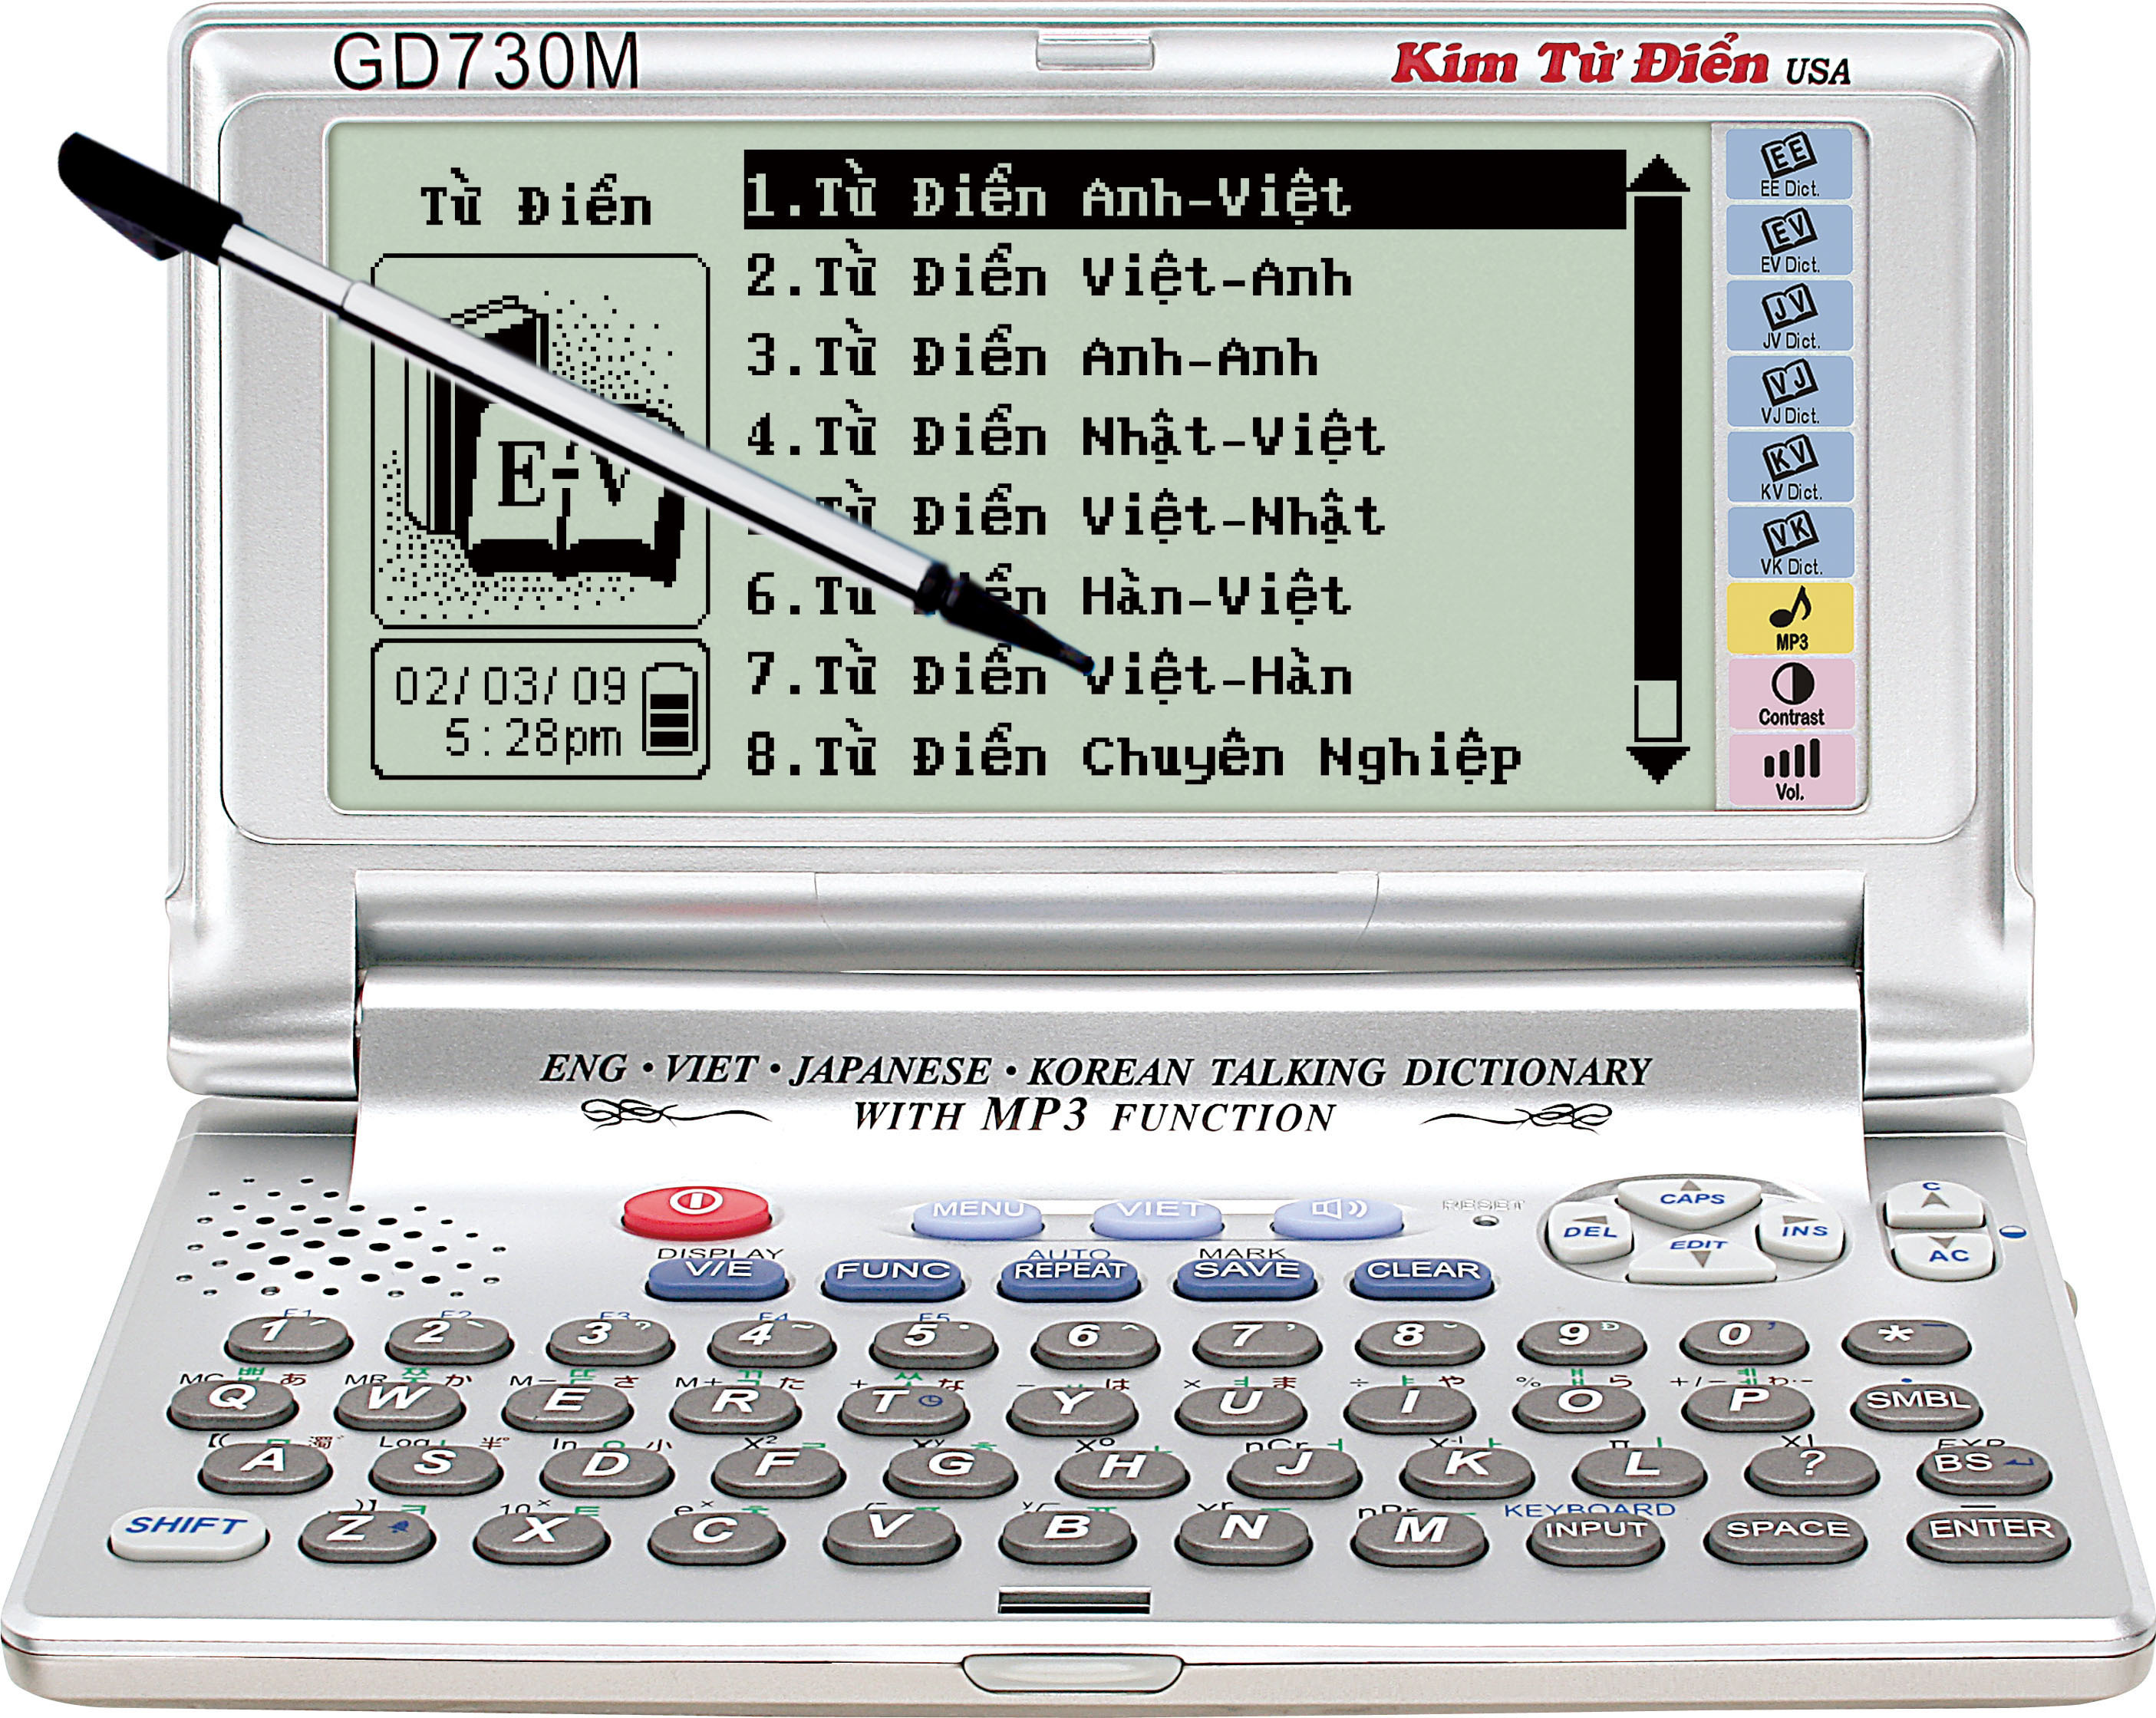 Kim từ điển GD730M (GD-730M) - 11 bộ đại từ điển 